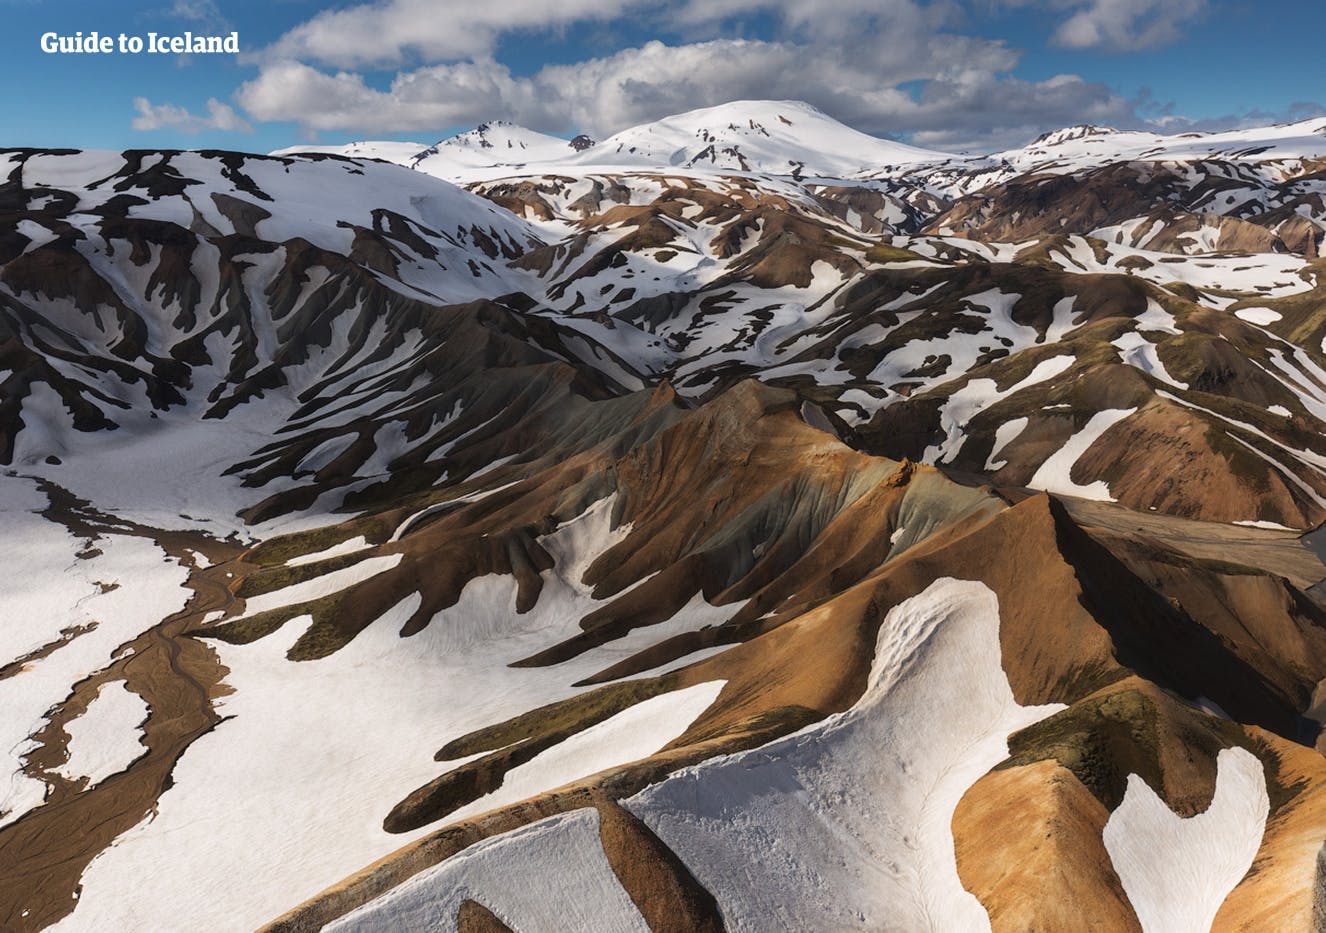 Montagnes enneigées de la région de Landmannalaugar dans les Hautes terres